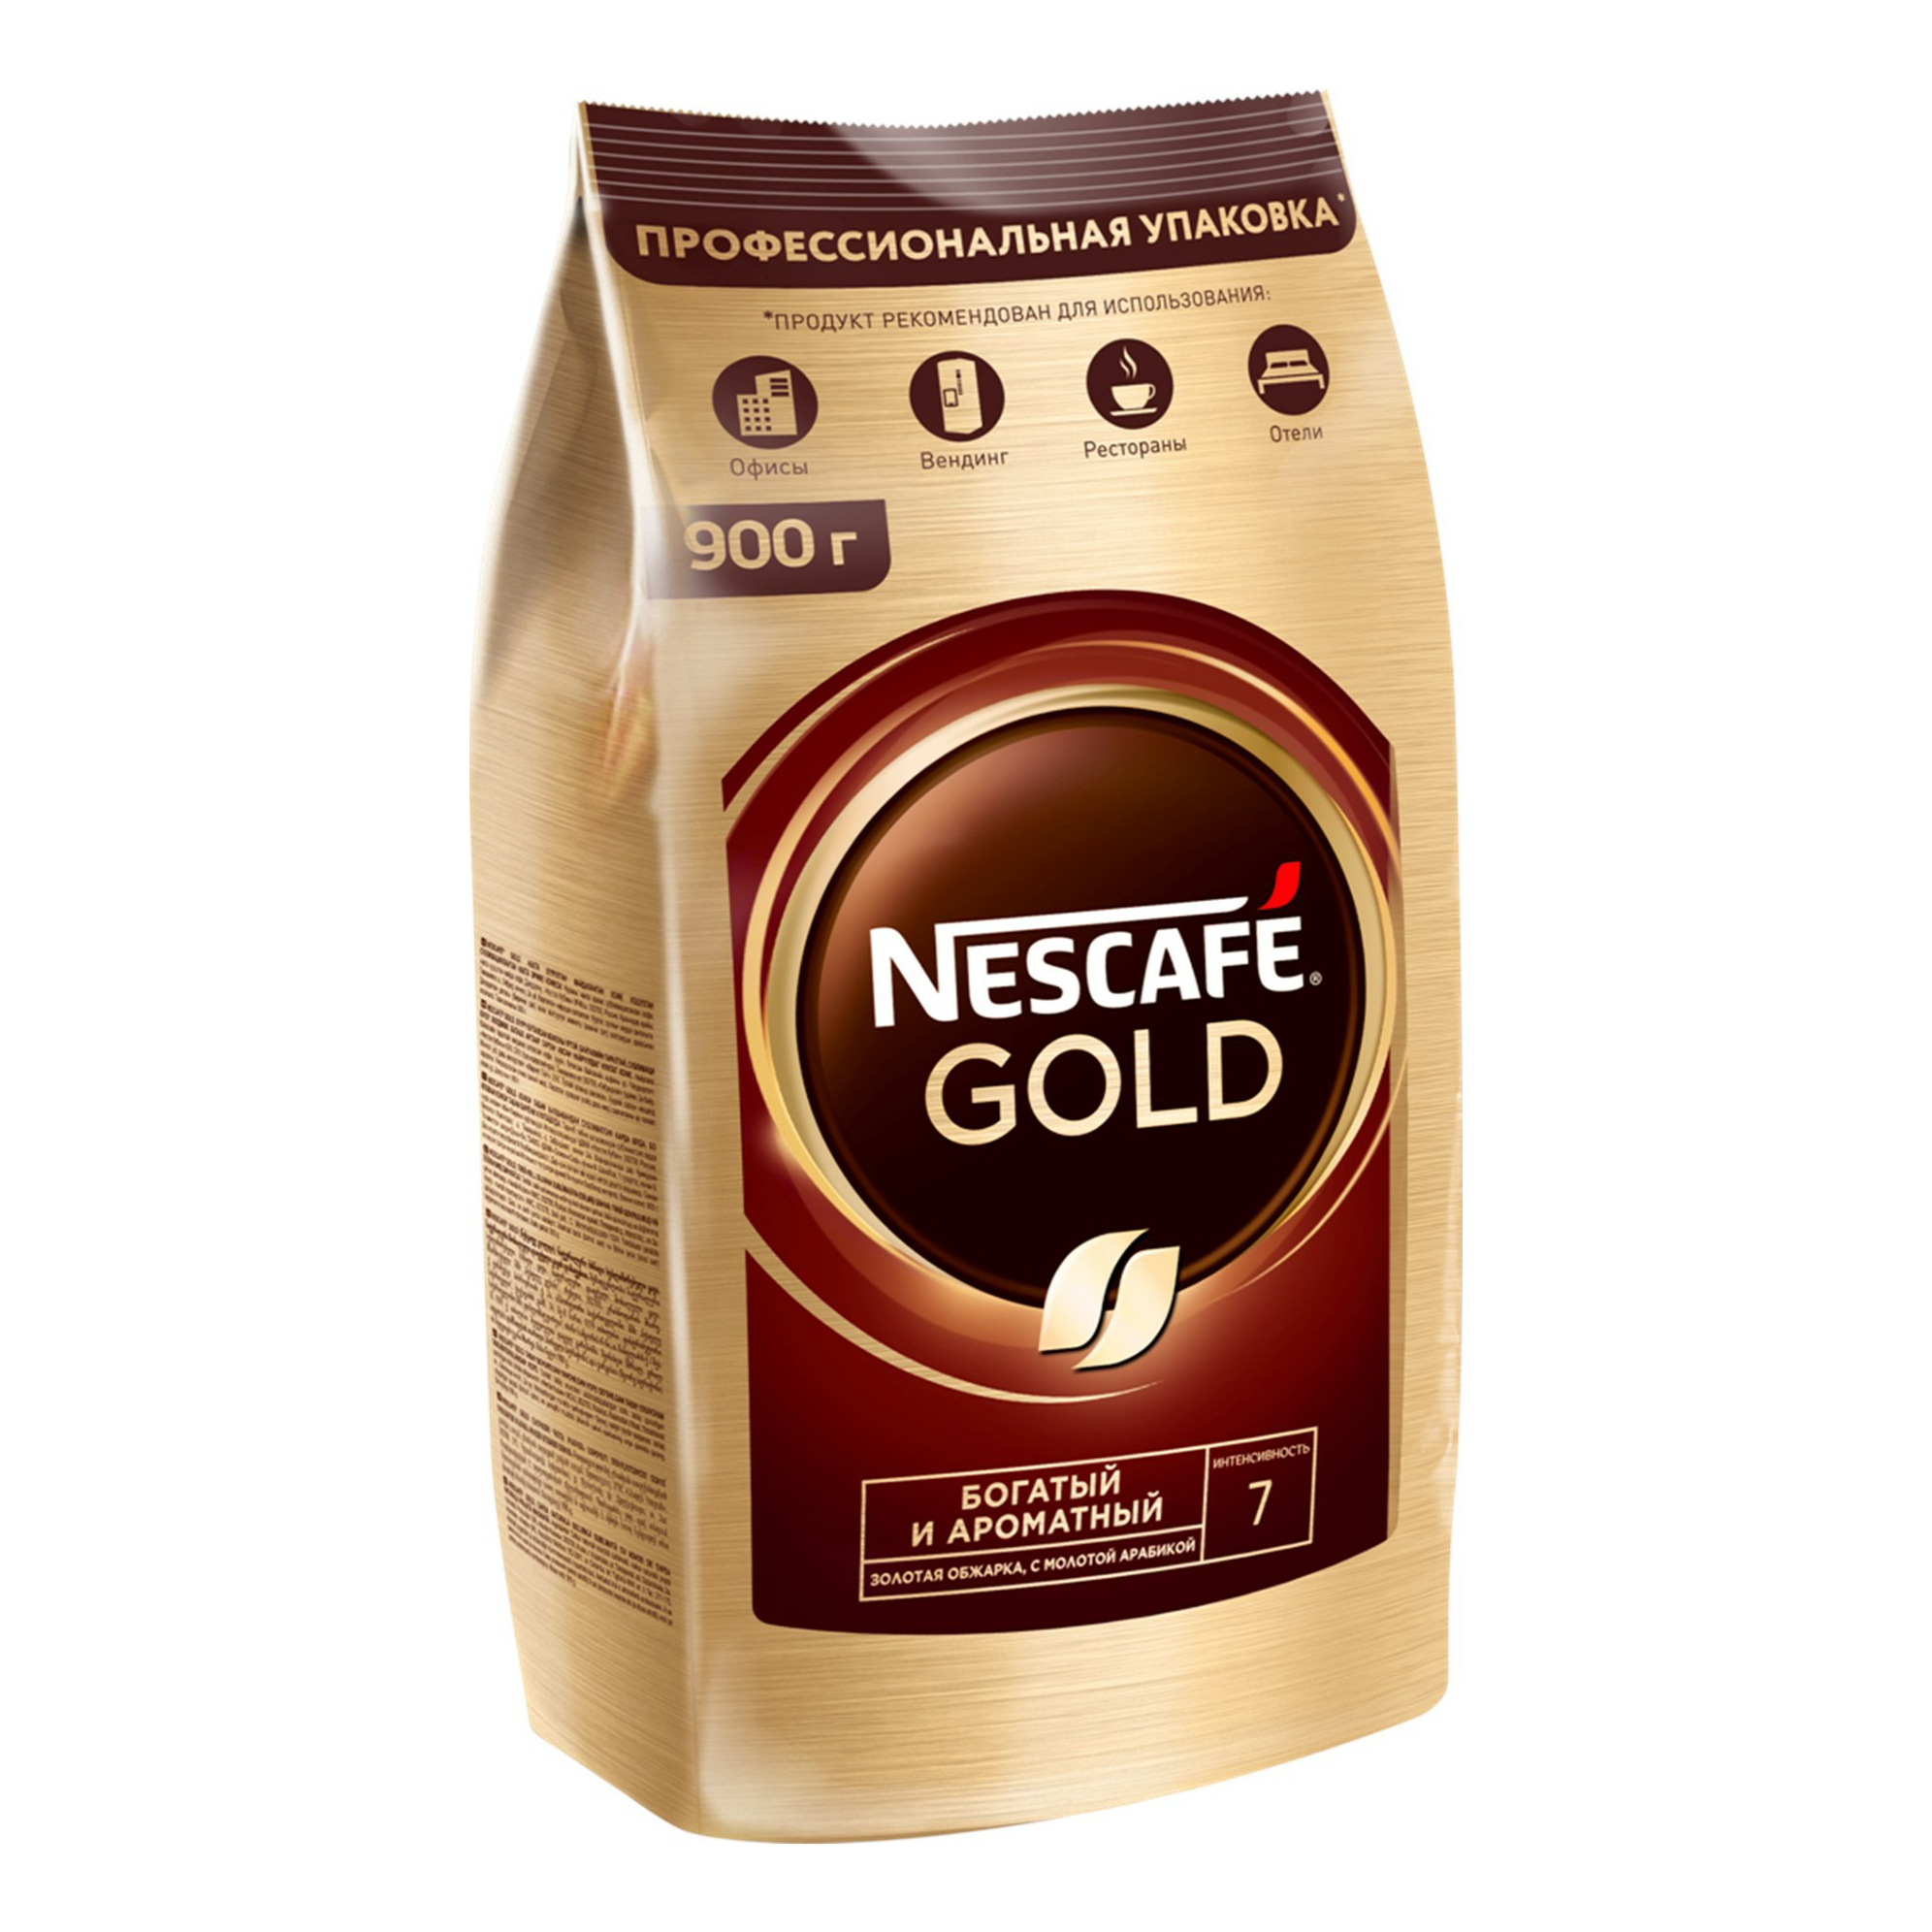 Nescafe gold сублимированный. Nescafe кофе Gold 900г.. Кофе растворимый Nescafe Gold 750 г. Кофе Нескафе Голд 900 гр. Кофе Nescafe Gold м/у 900г.